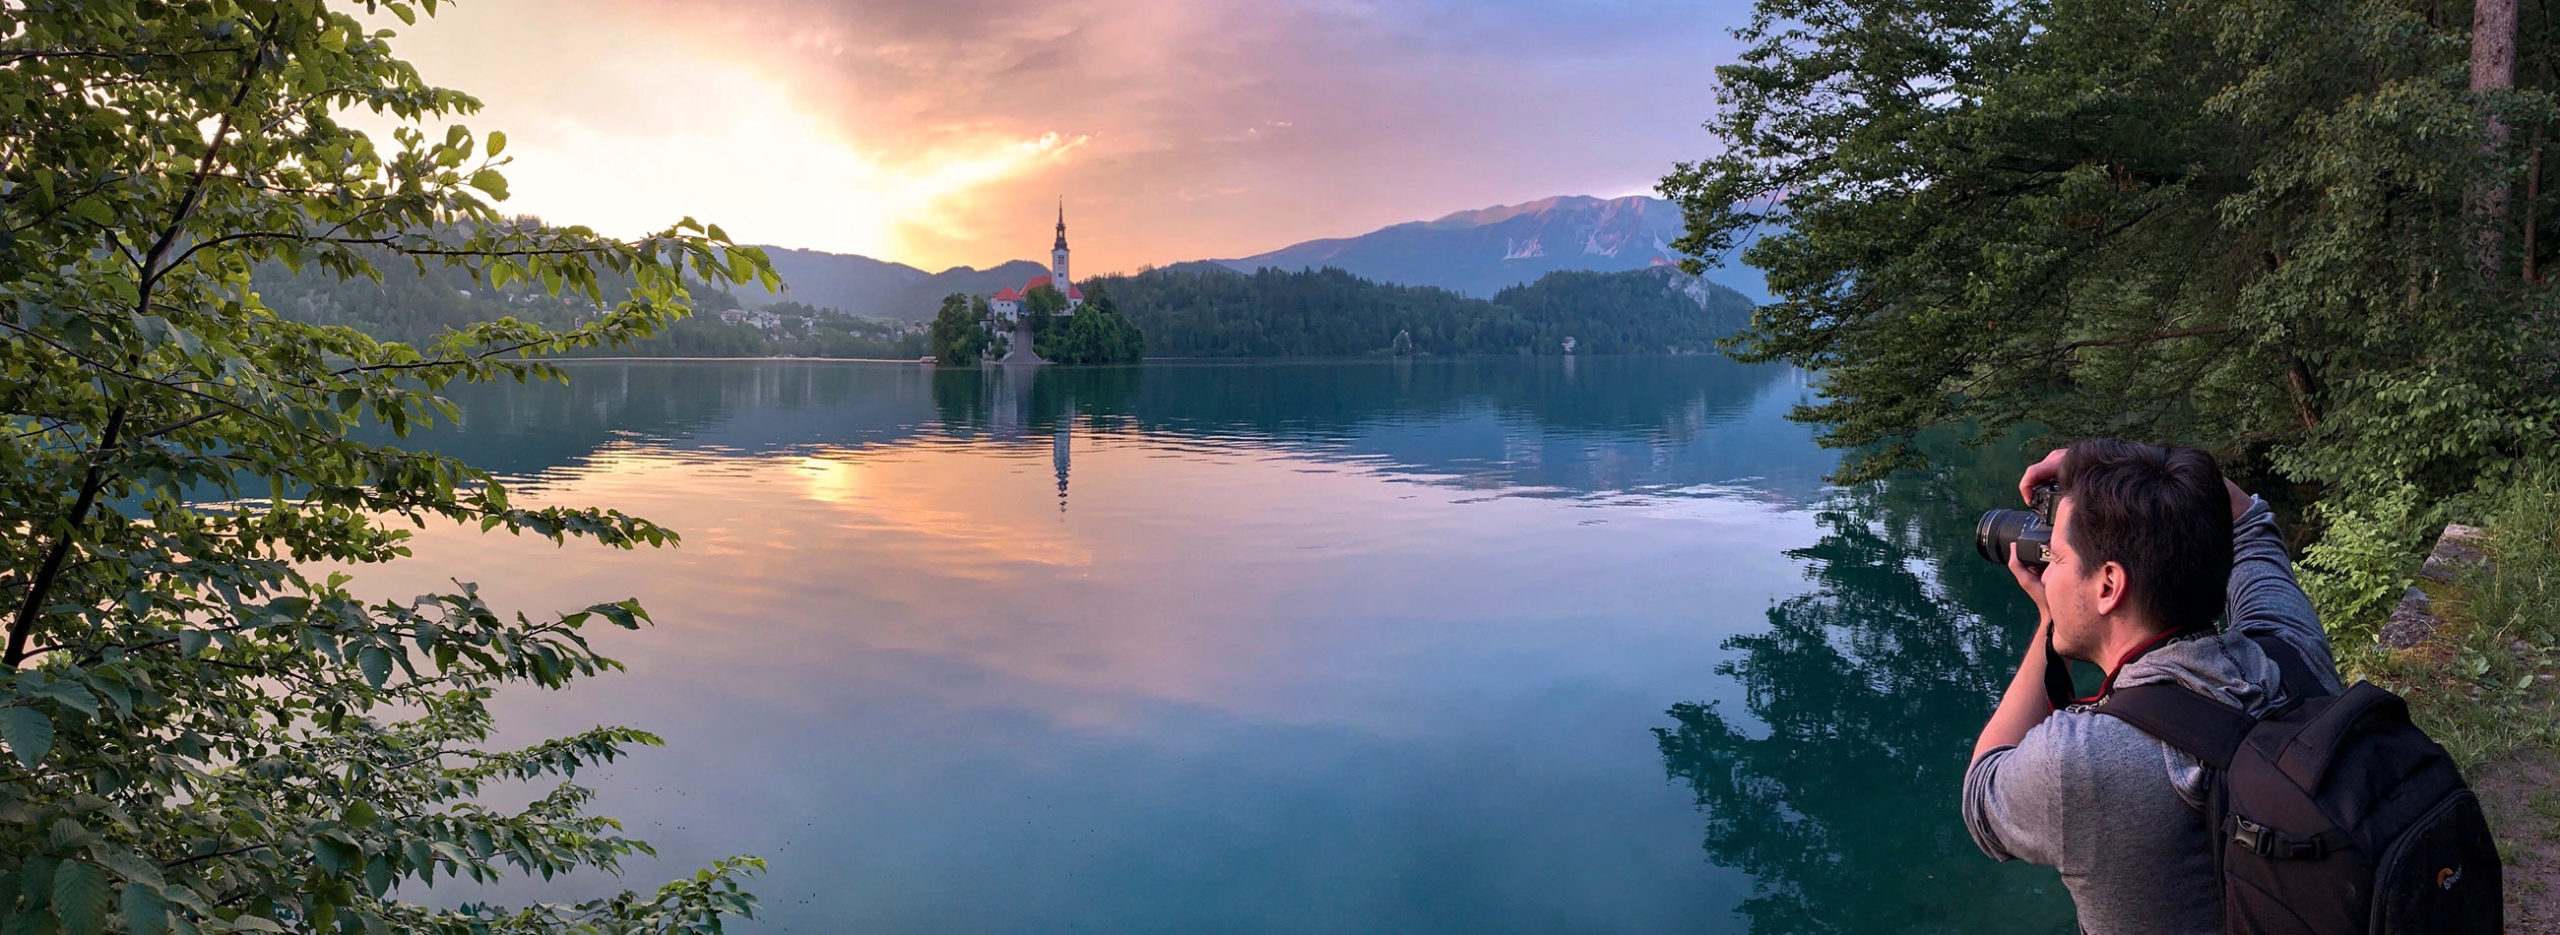 Coucher de soleil, Lac de Bled, Slovénie / Sunset, Lake Bled, Slovenia